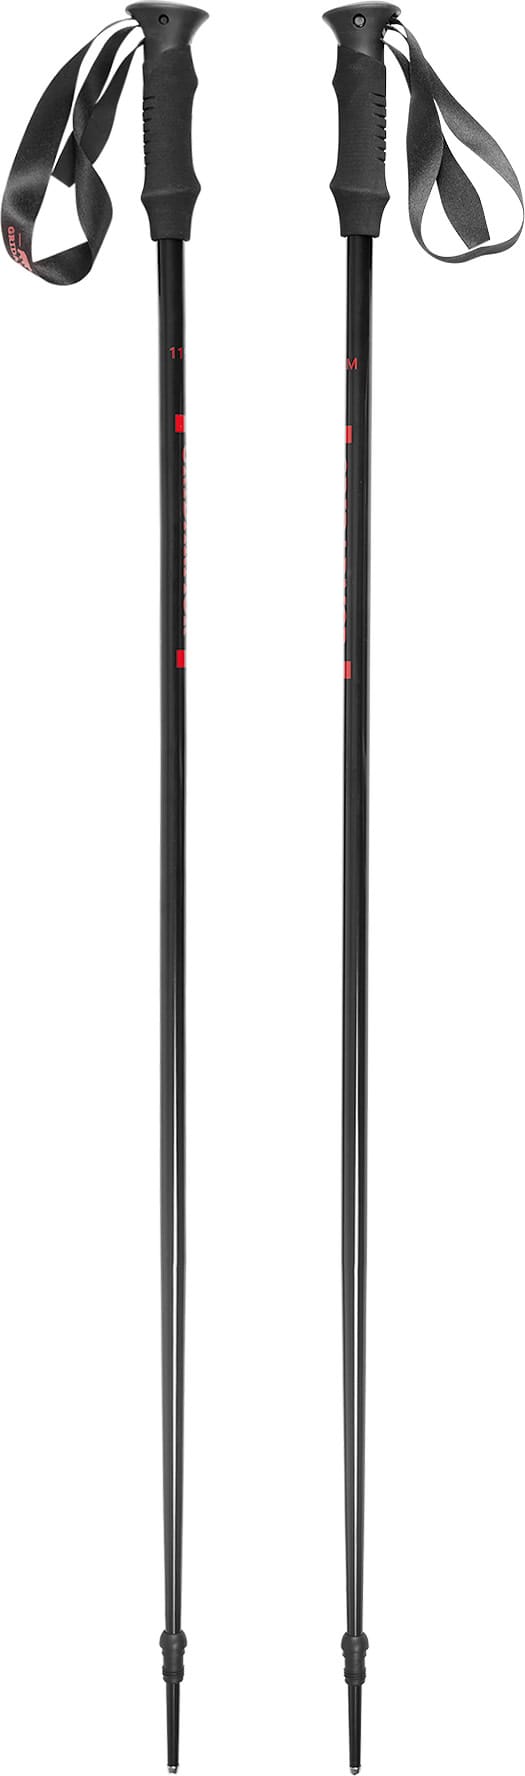 Hafjell Ski Pole Black/Ribbon Red Gridarmor